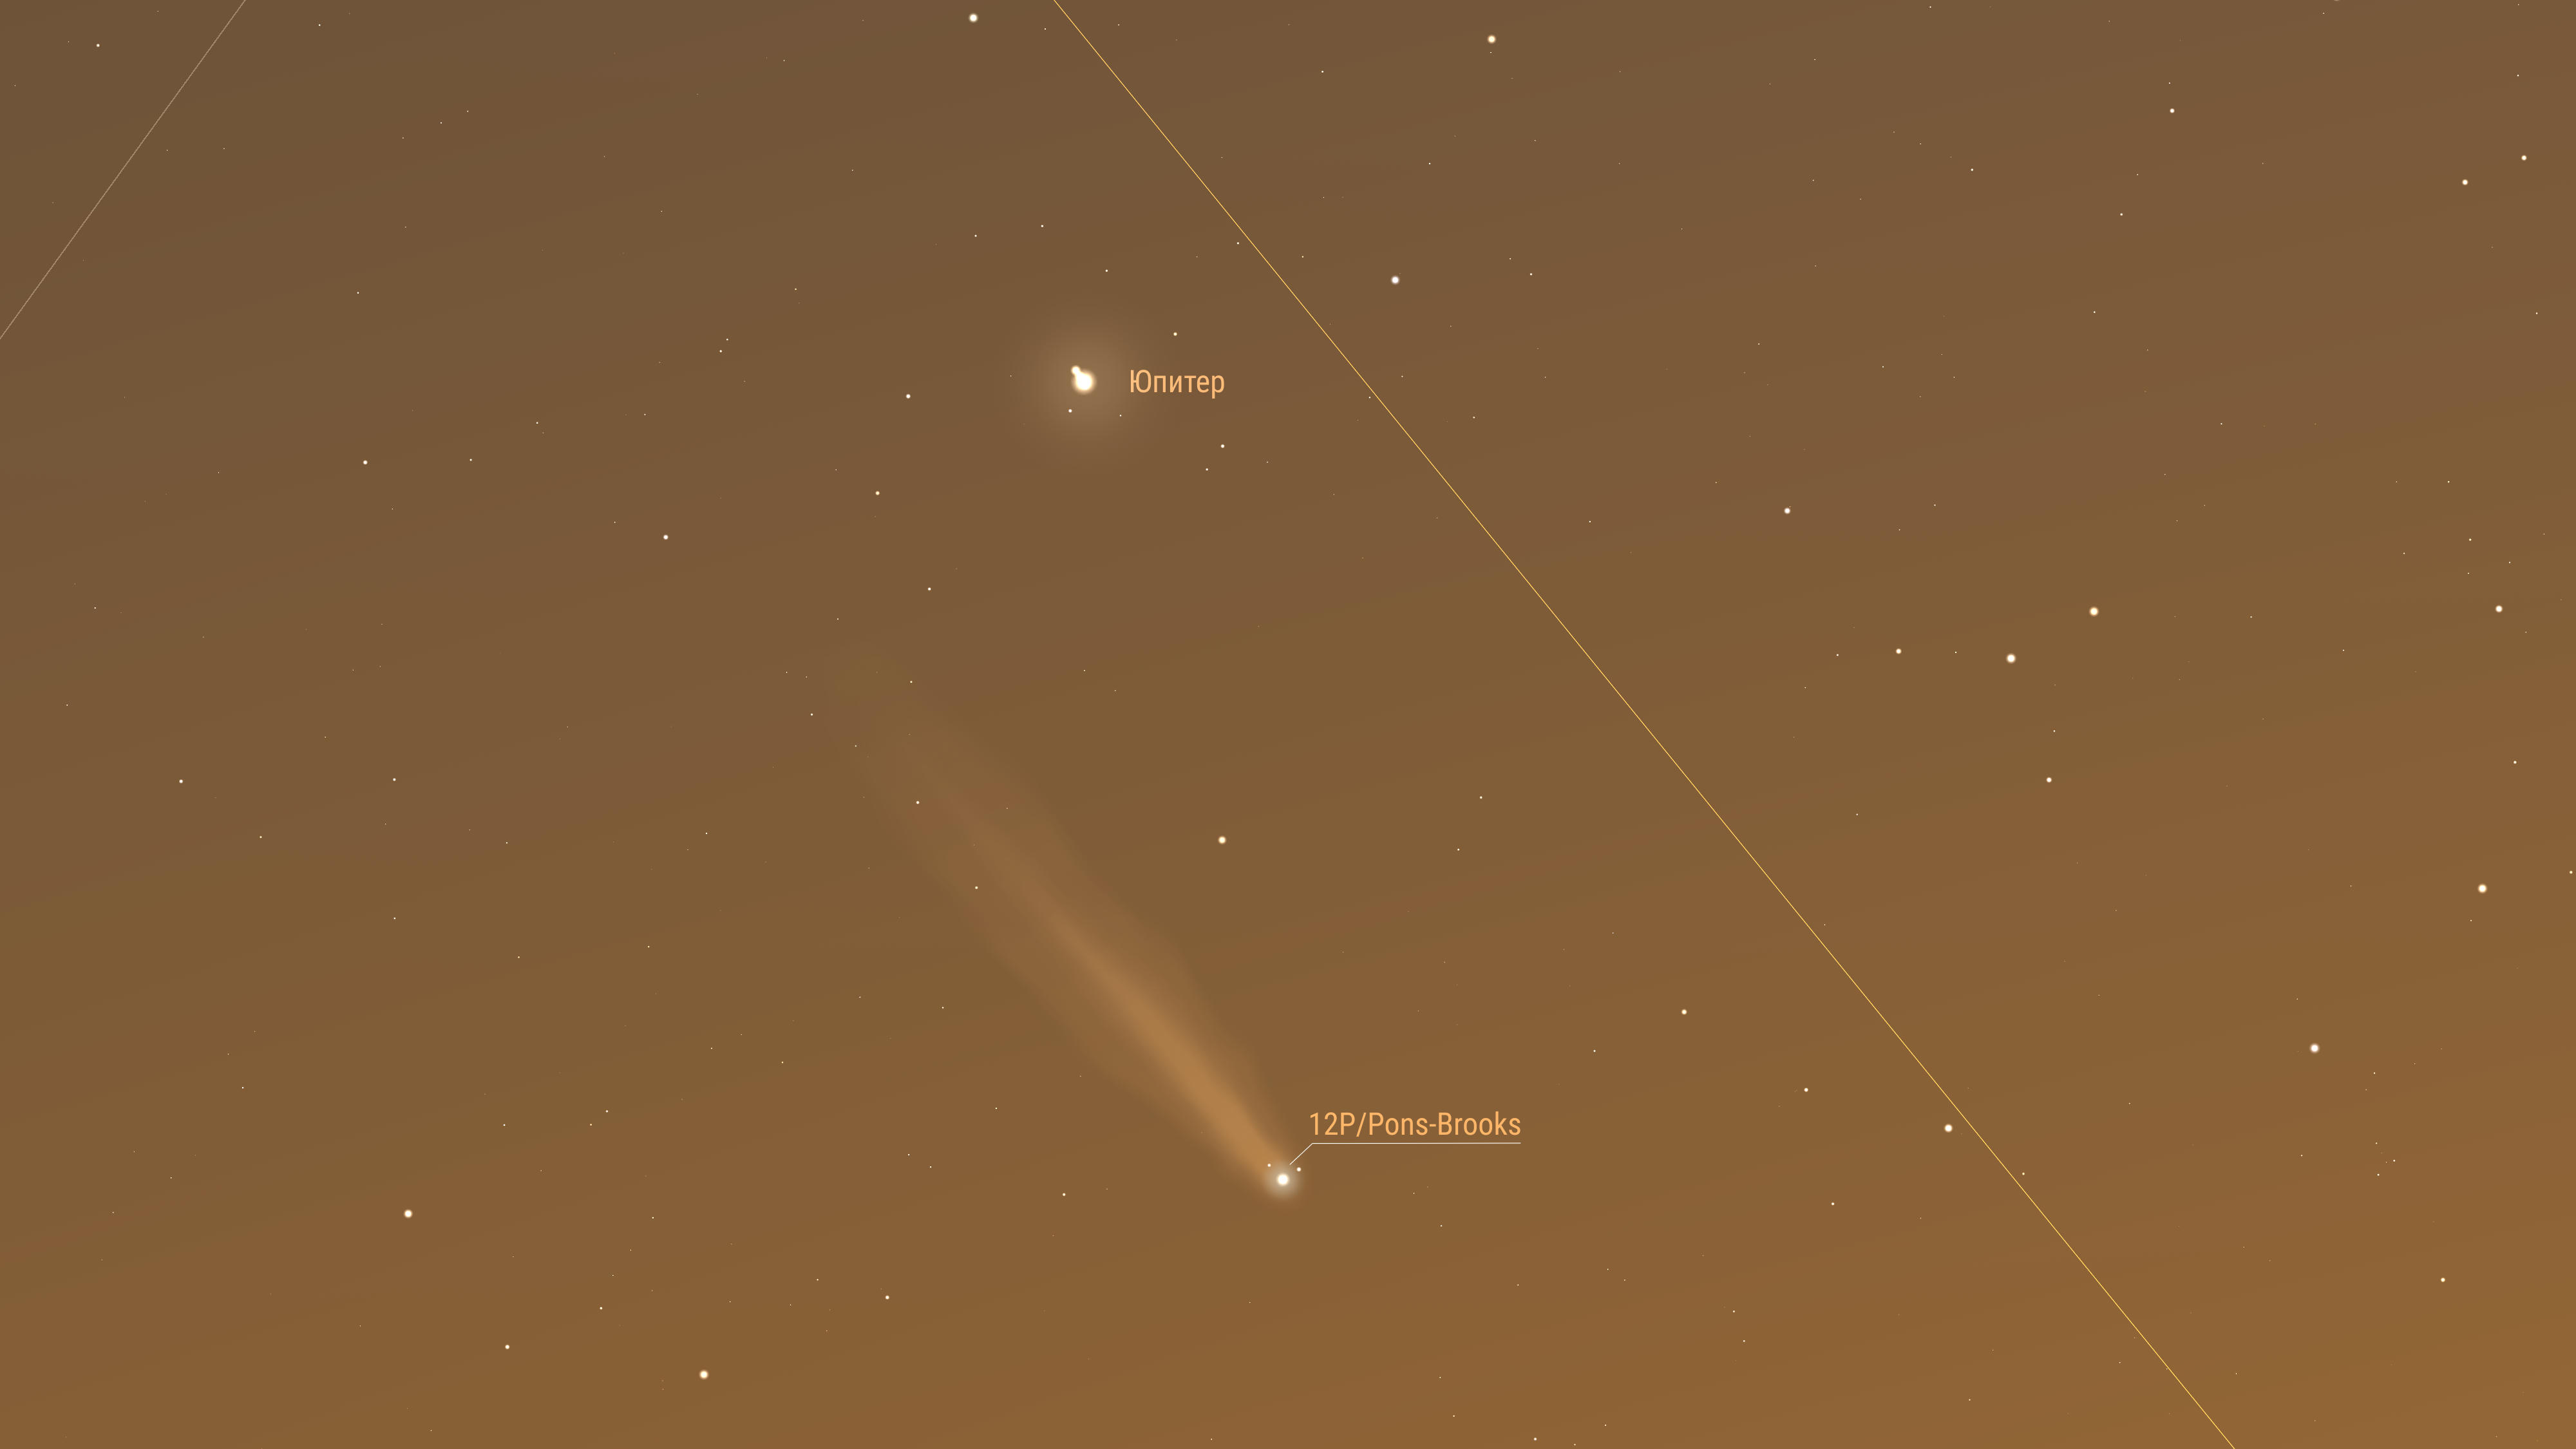 Комета продолжает движение по созвездию Овна. Предполагаемая звездная величина 3,78m. Элонгация 23 градуса. Комета достигла наибольшего сближения с Юпитером  